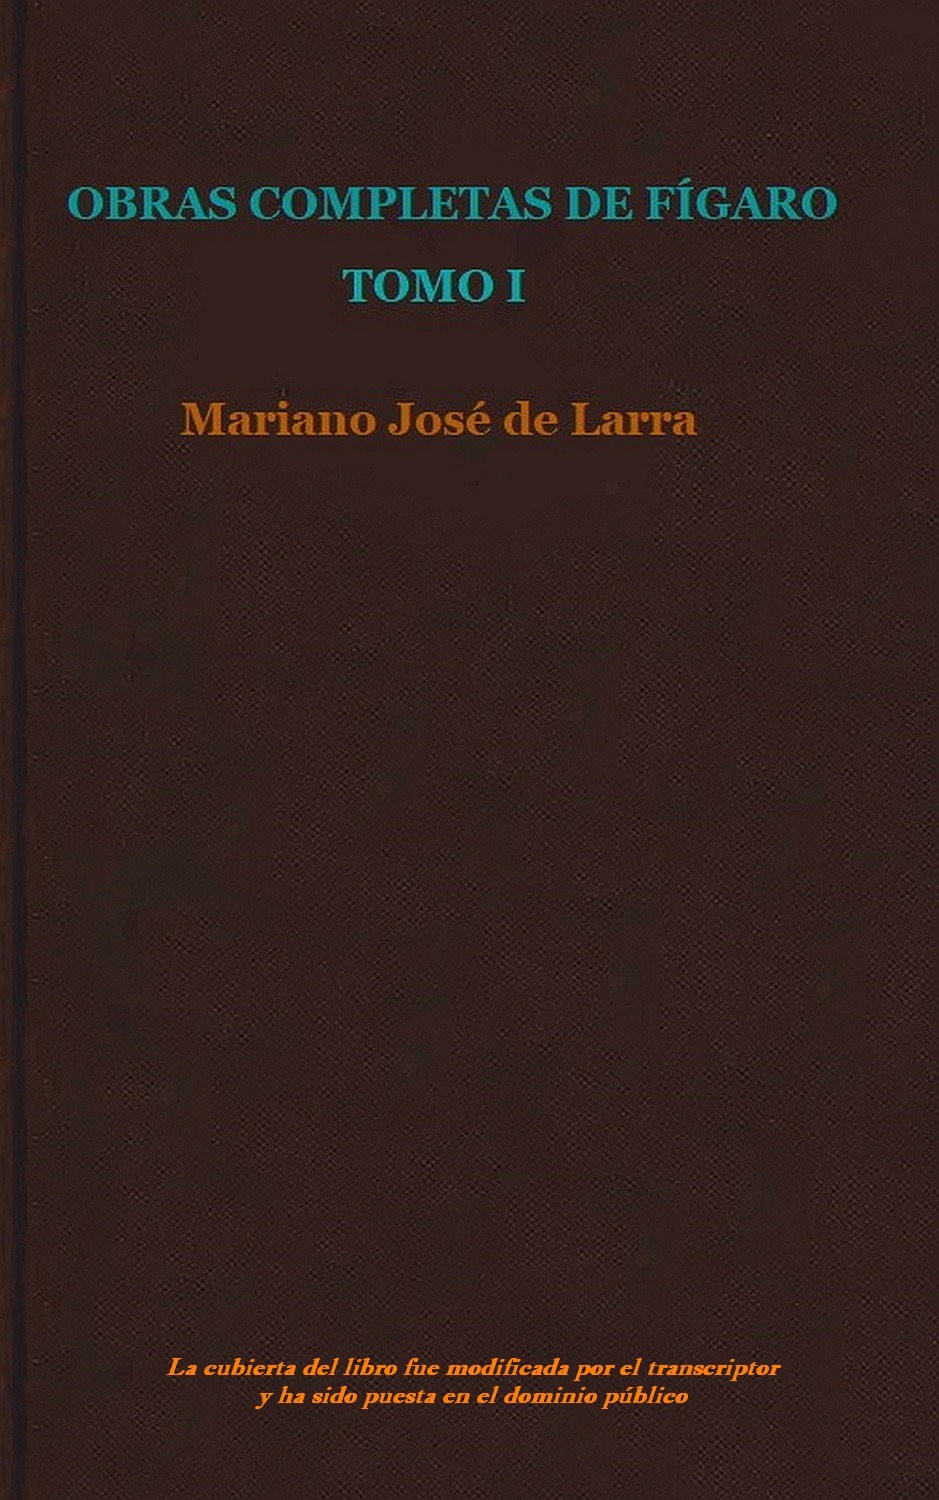 granizo nativo escucho música Obras Completas De Fígaro , by Mariano José de Larra—A Project Gutenberg  eBook